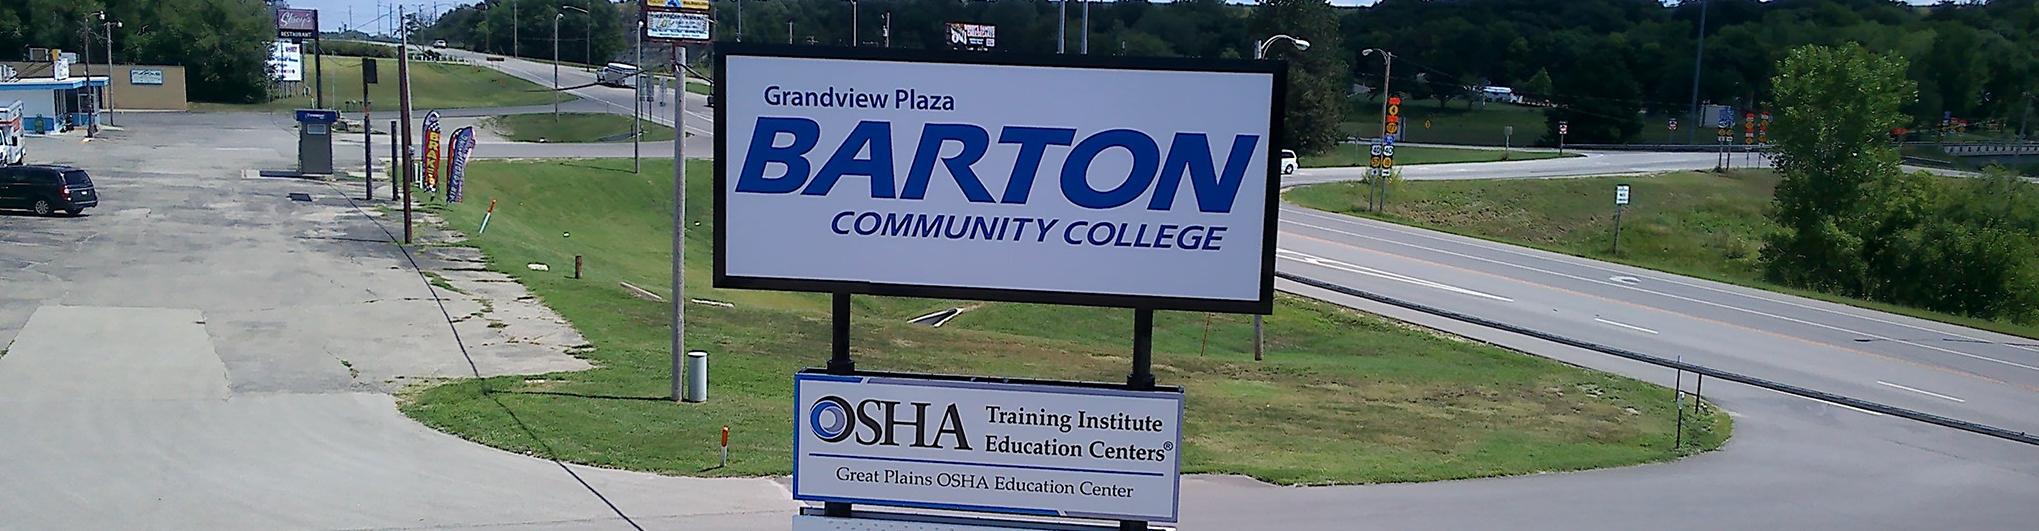 Grandview Plaza campus sign